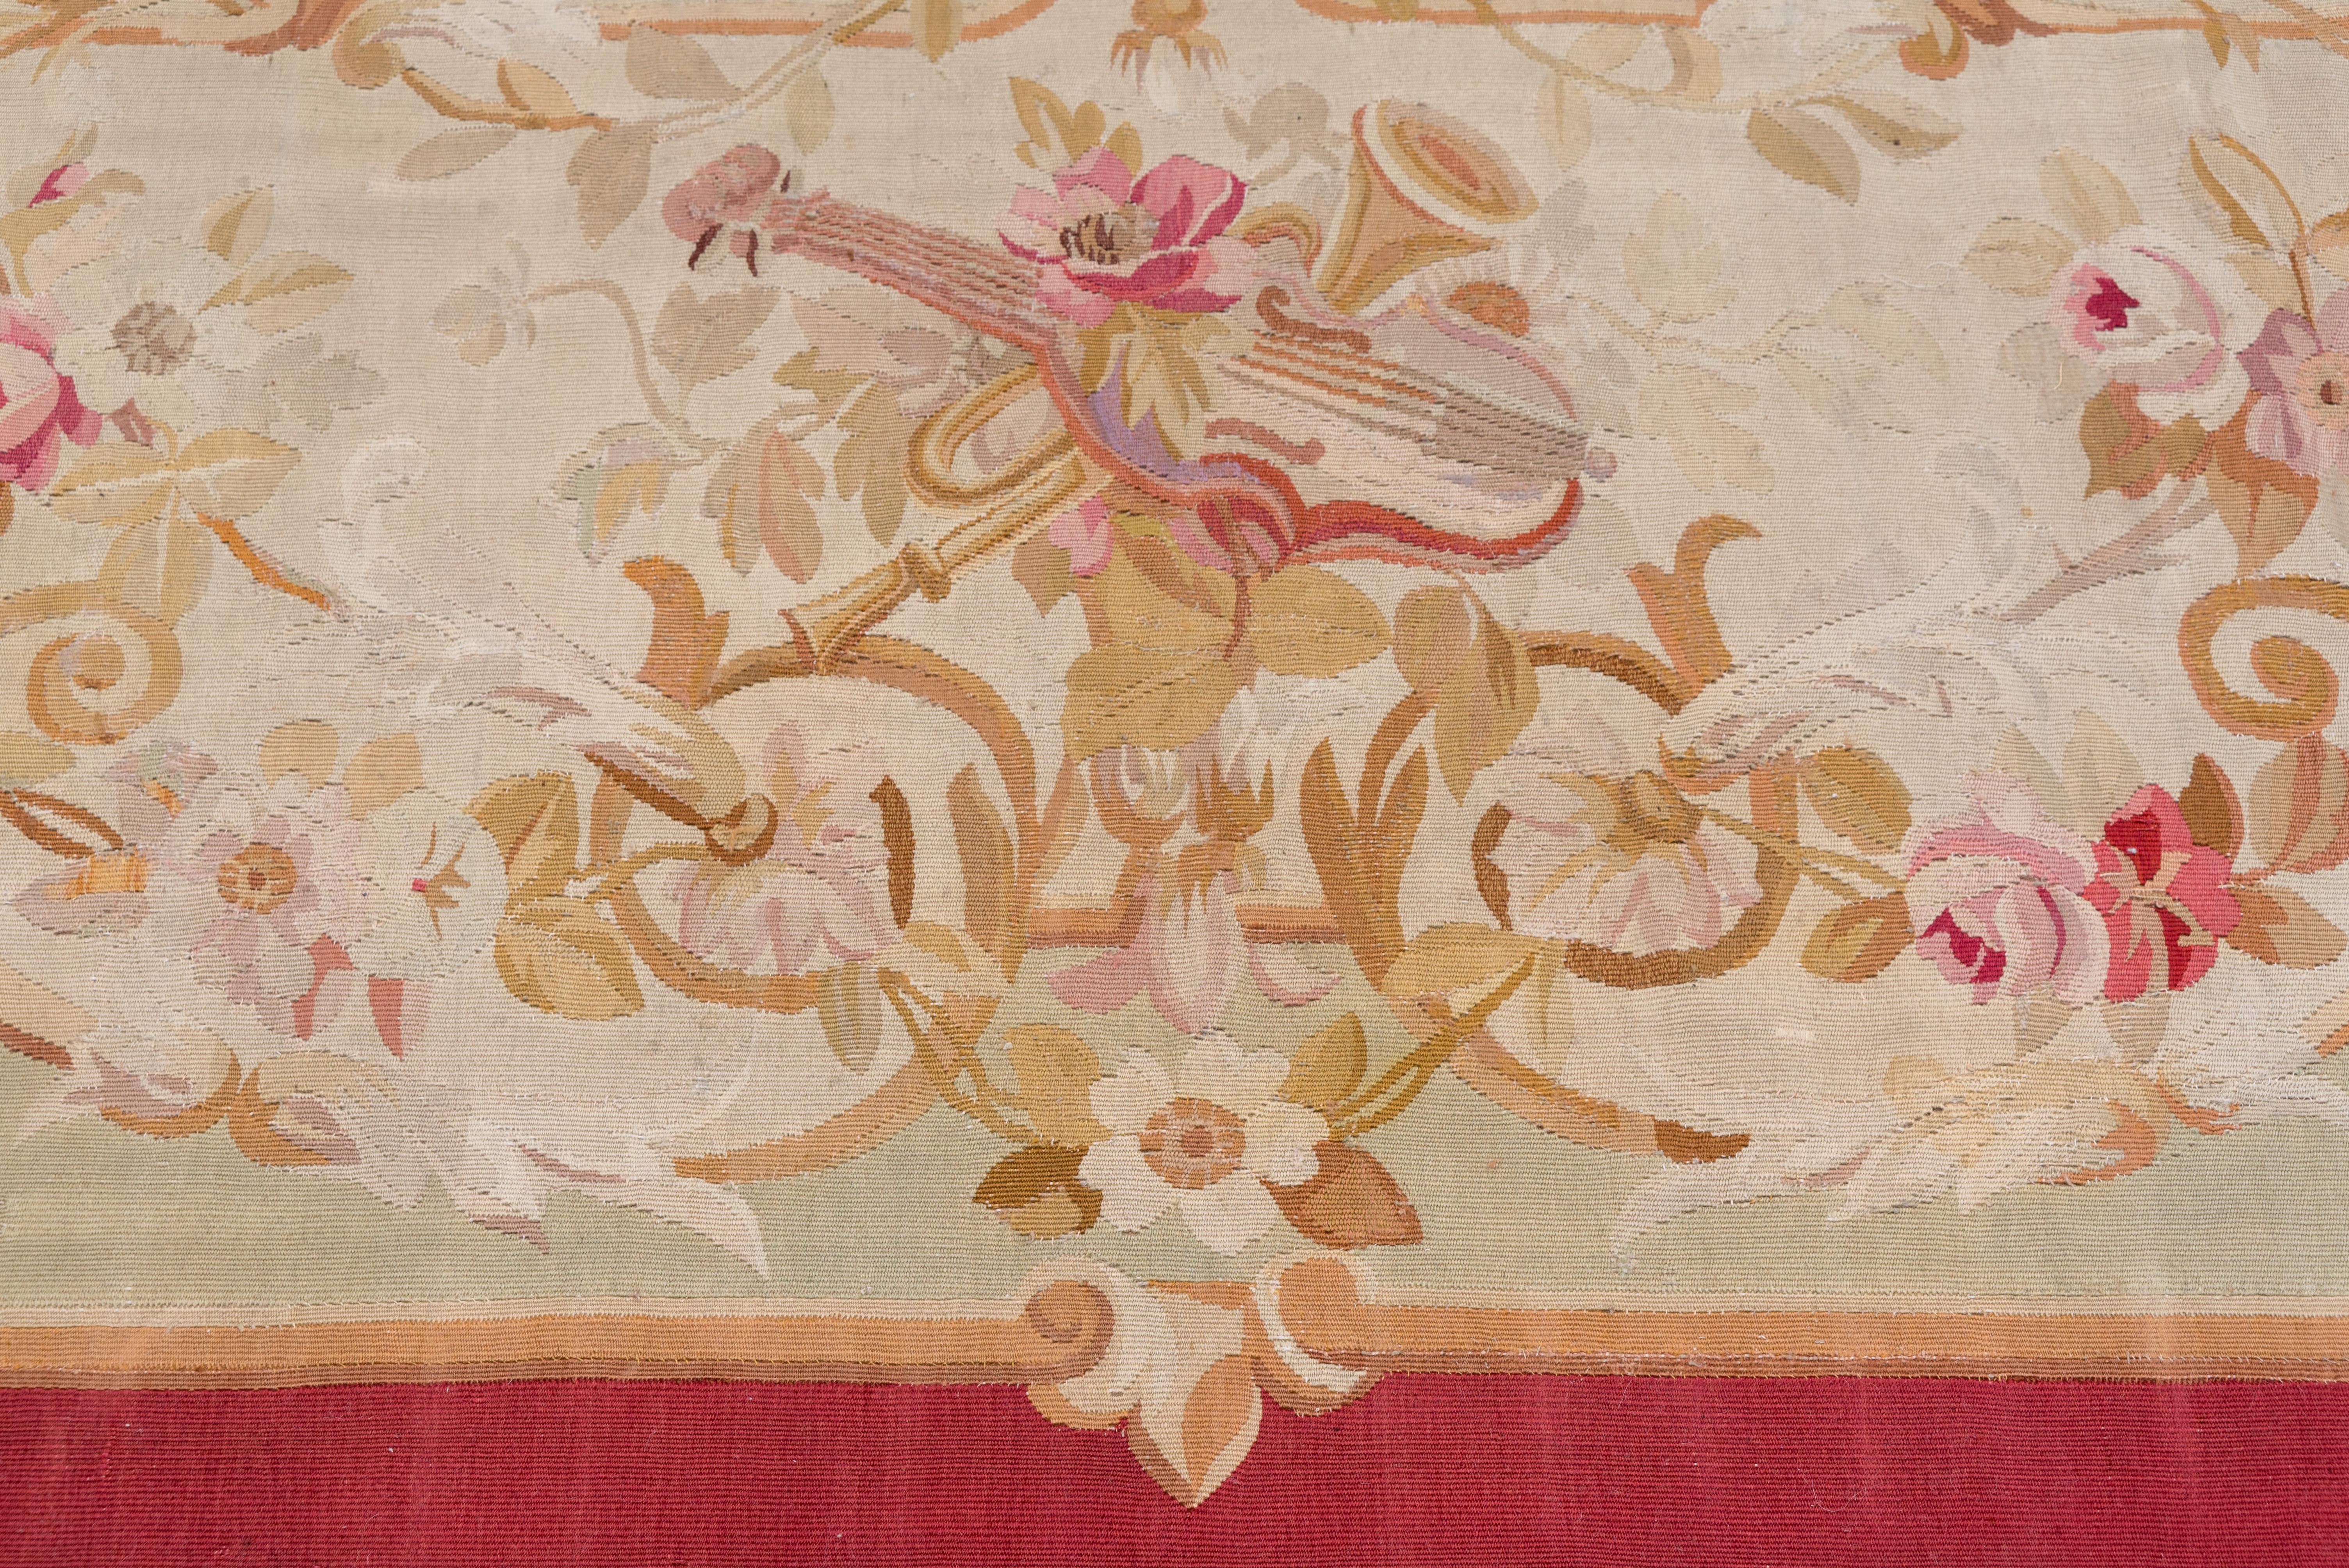 Ce tapis français tissé en tapisserie présente un médaillon ovale en cartouche écru pincé avec un bouquet central, sur un champ beige rehaussé de fleurs. La bordure brune unie en forme d'angle encadre l'ensemble.